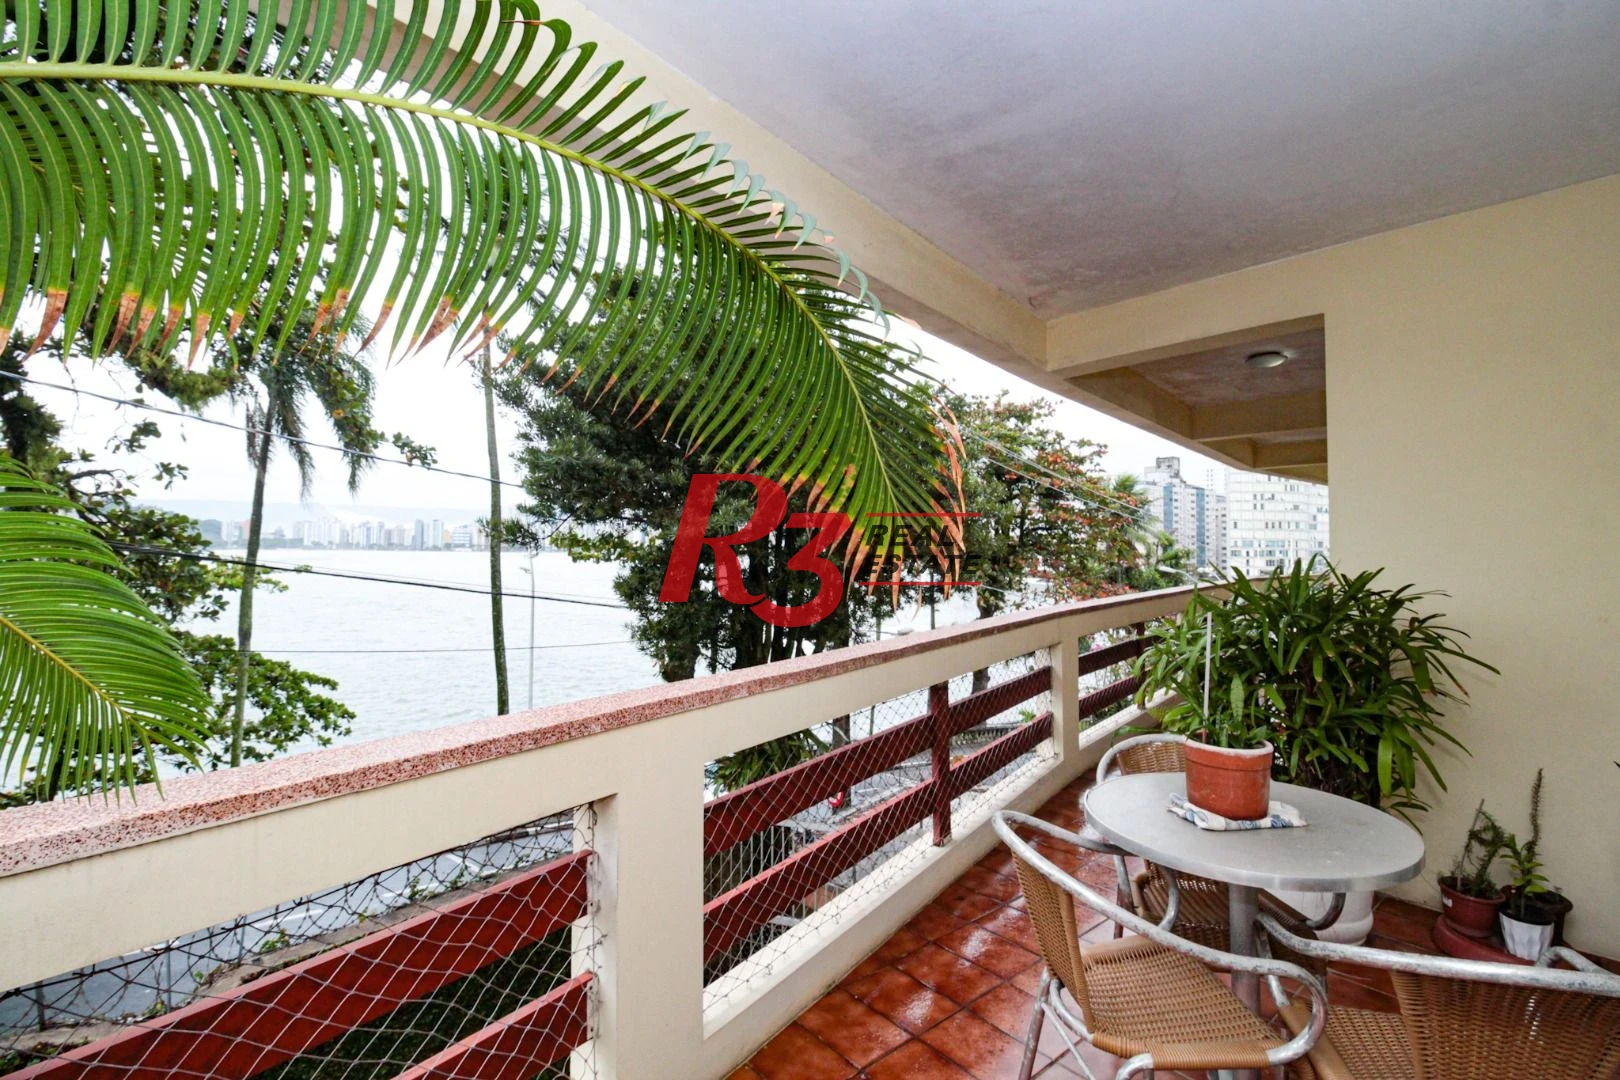 Apartamento à venda, 171 m² por R$ 800.000,00 - Ilha Porchat - São Vicente/SP